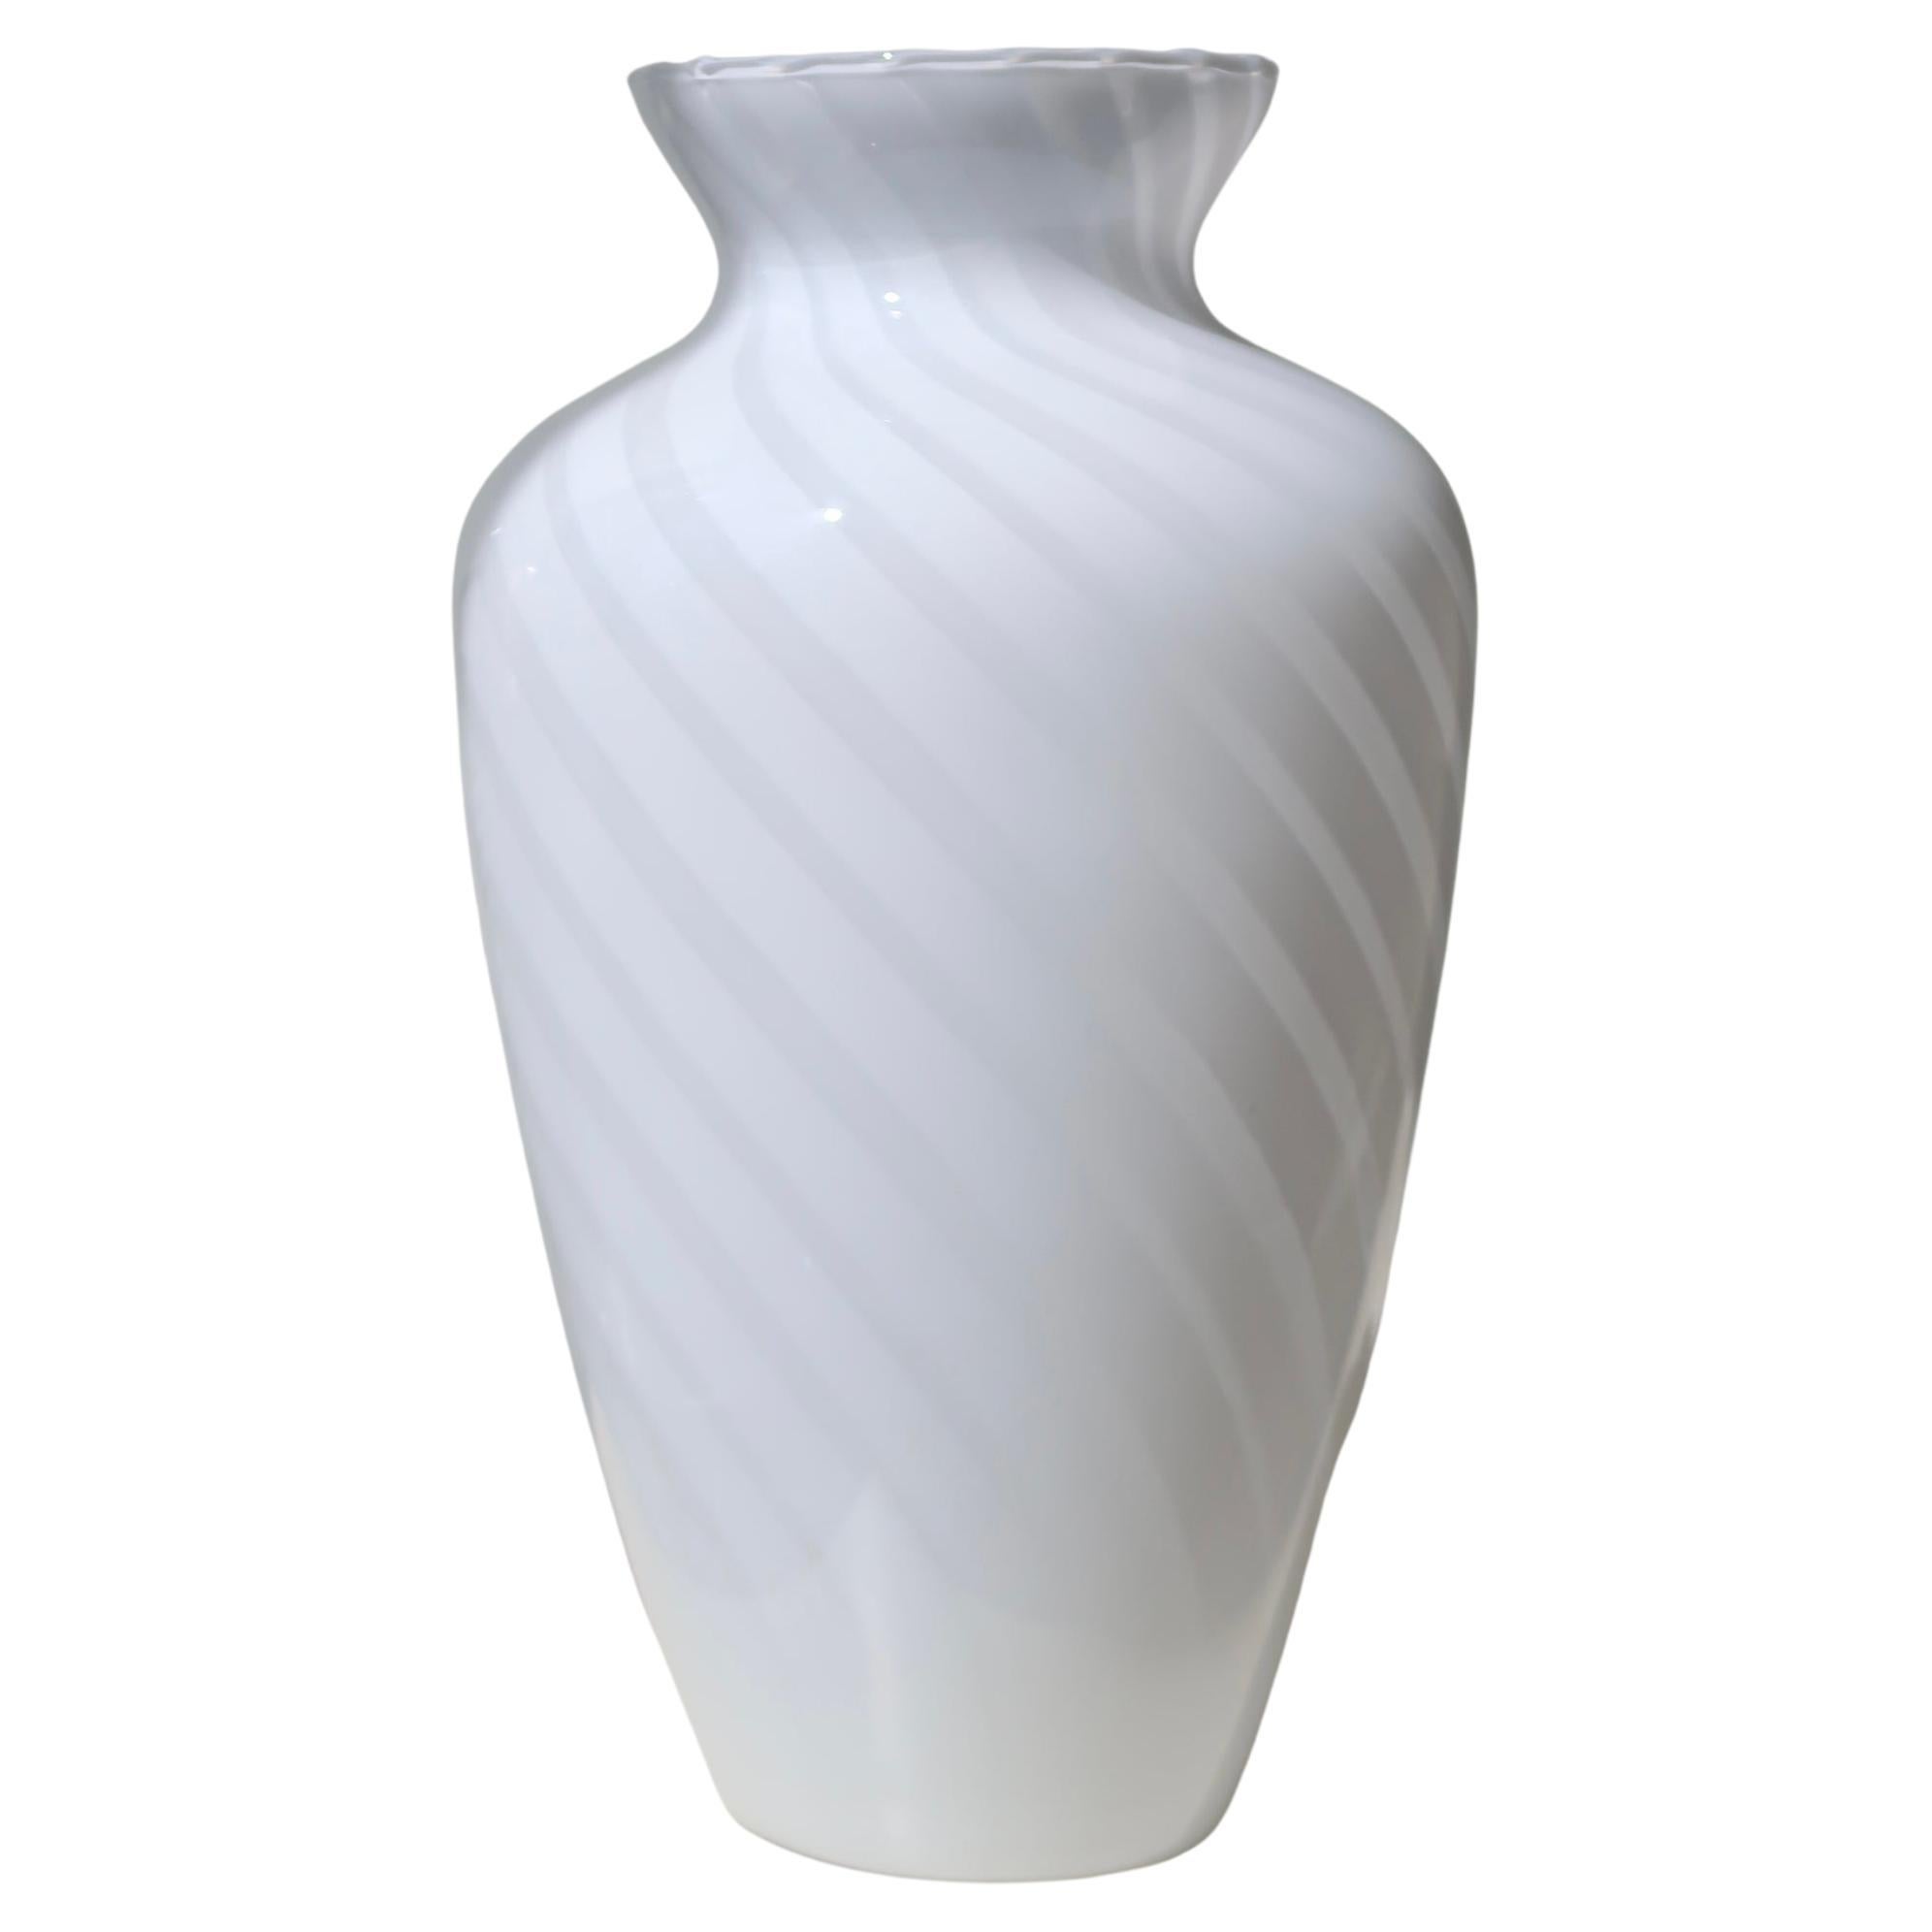 Grand vase italien des années 1970 en verre de Murano blanc tourbillonnant soufflé à la bouche